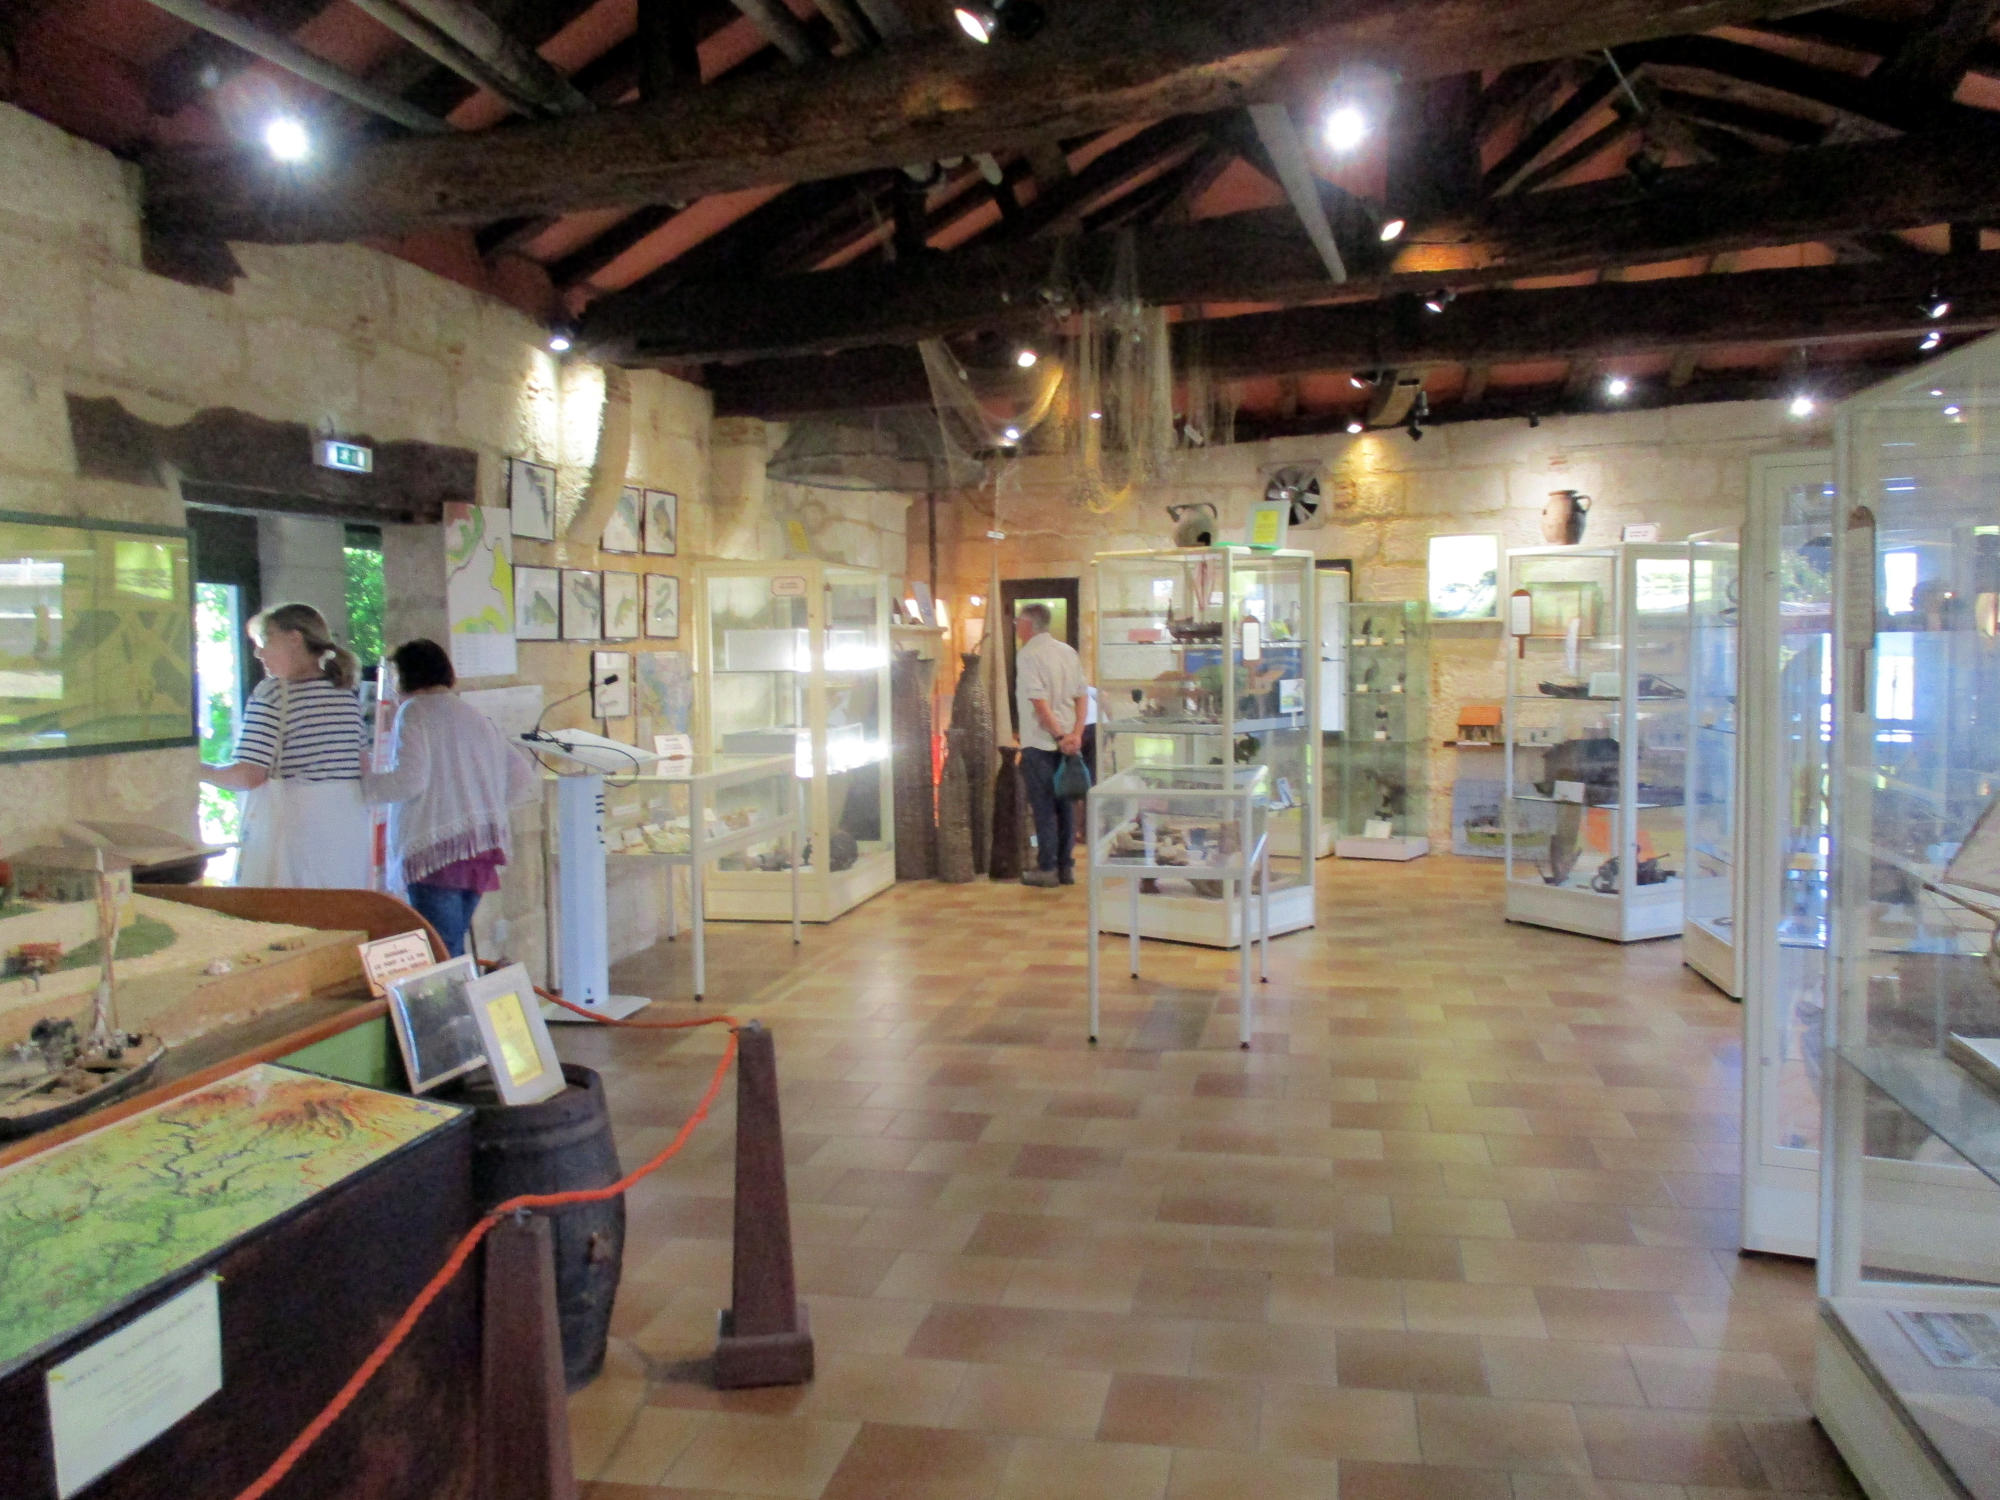 11 - Interieur - Musee de la Dordogne bateliere